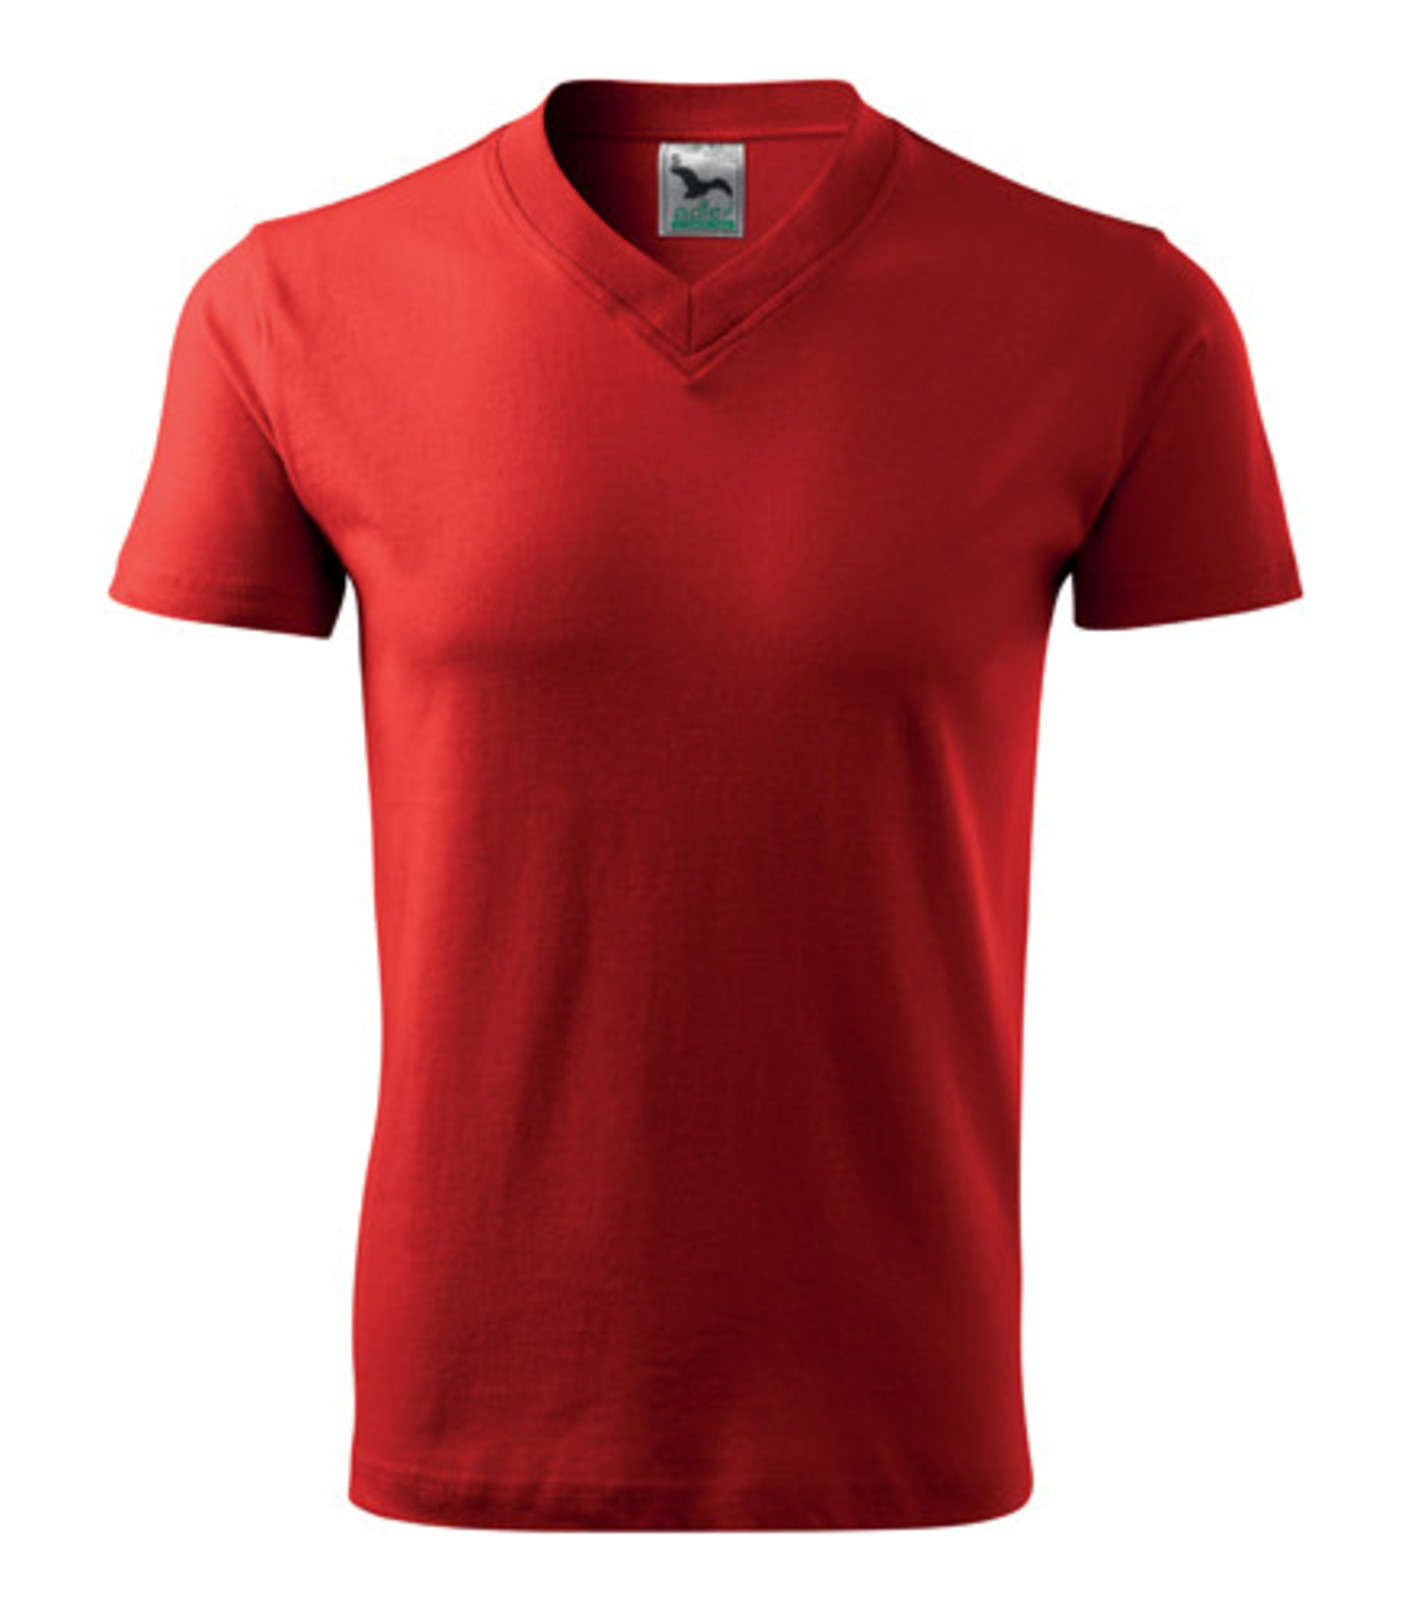 Unisex tričko s výstrihom Adler V-Neck 102 - veľkosť: L, farba: červená